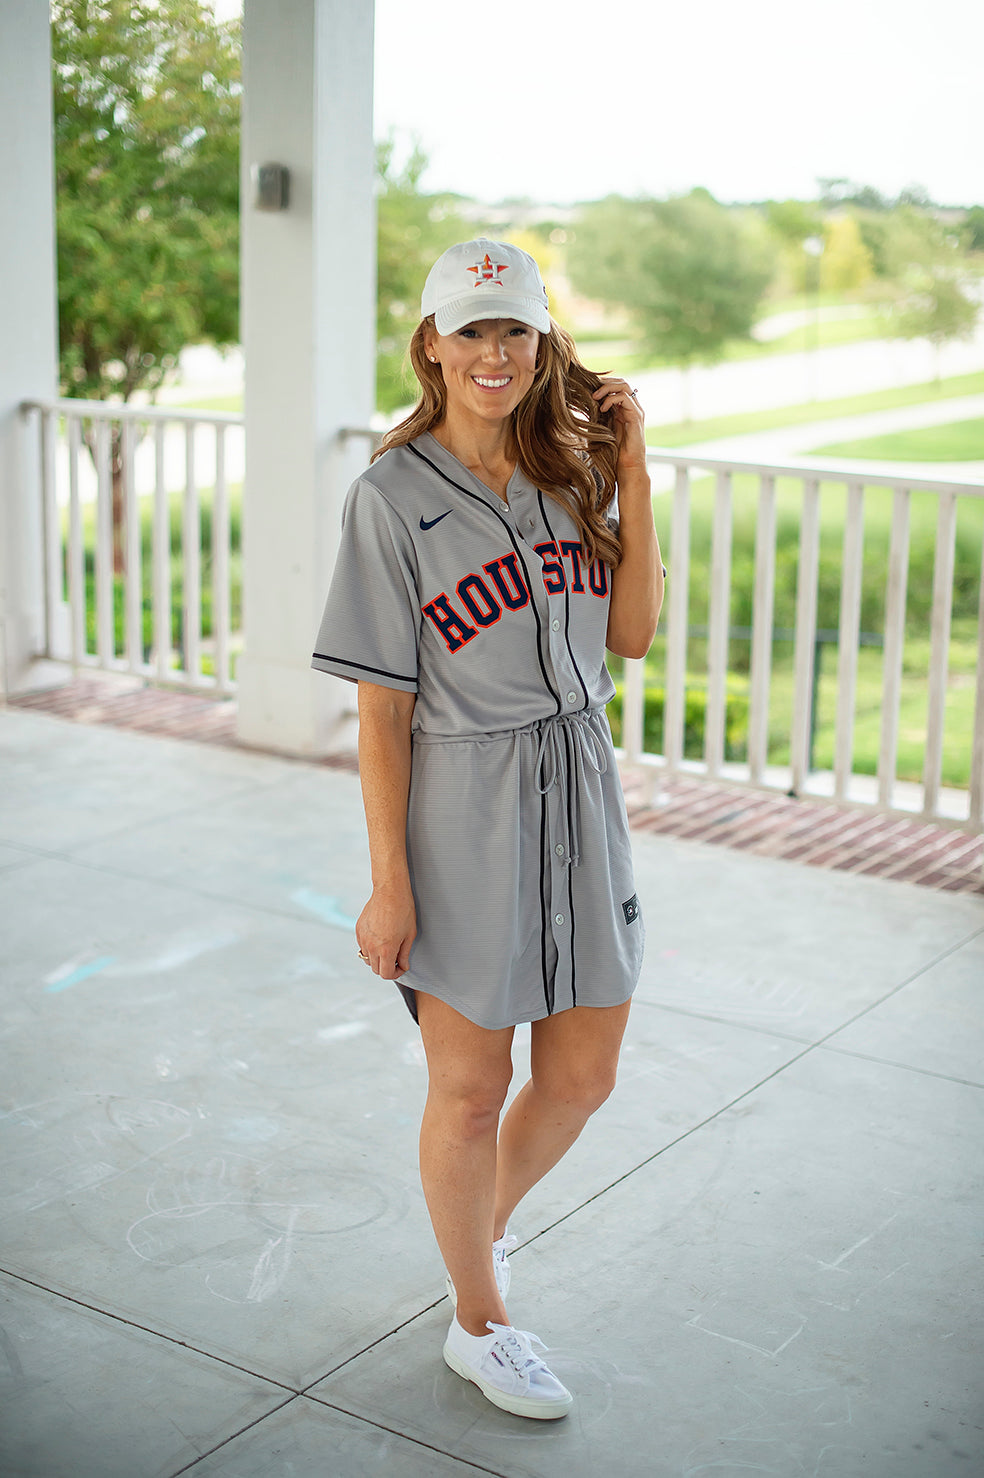 Astros Womens – Fan Dress